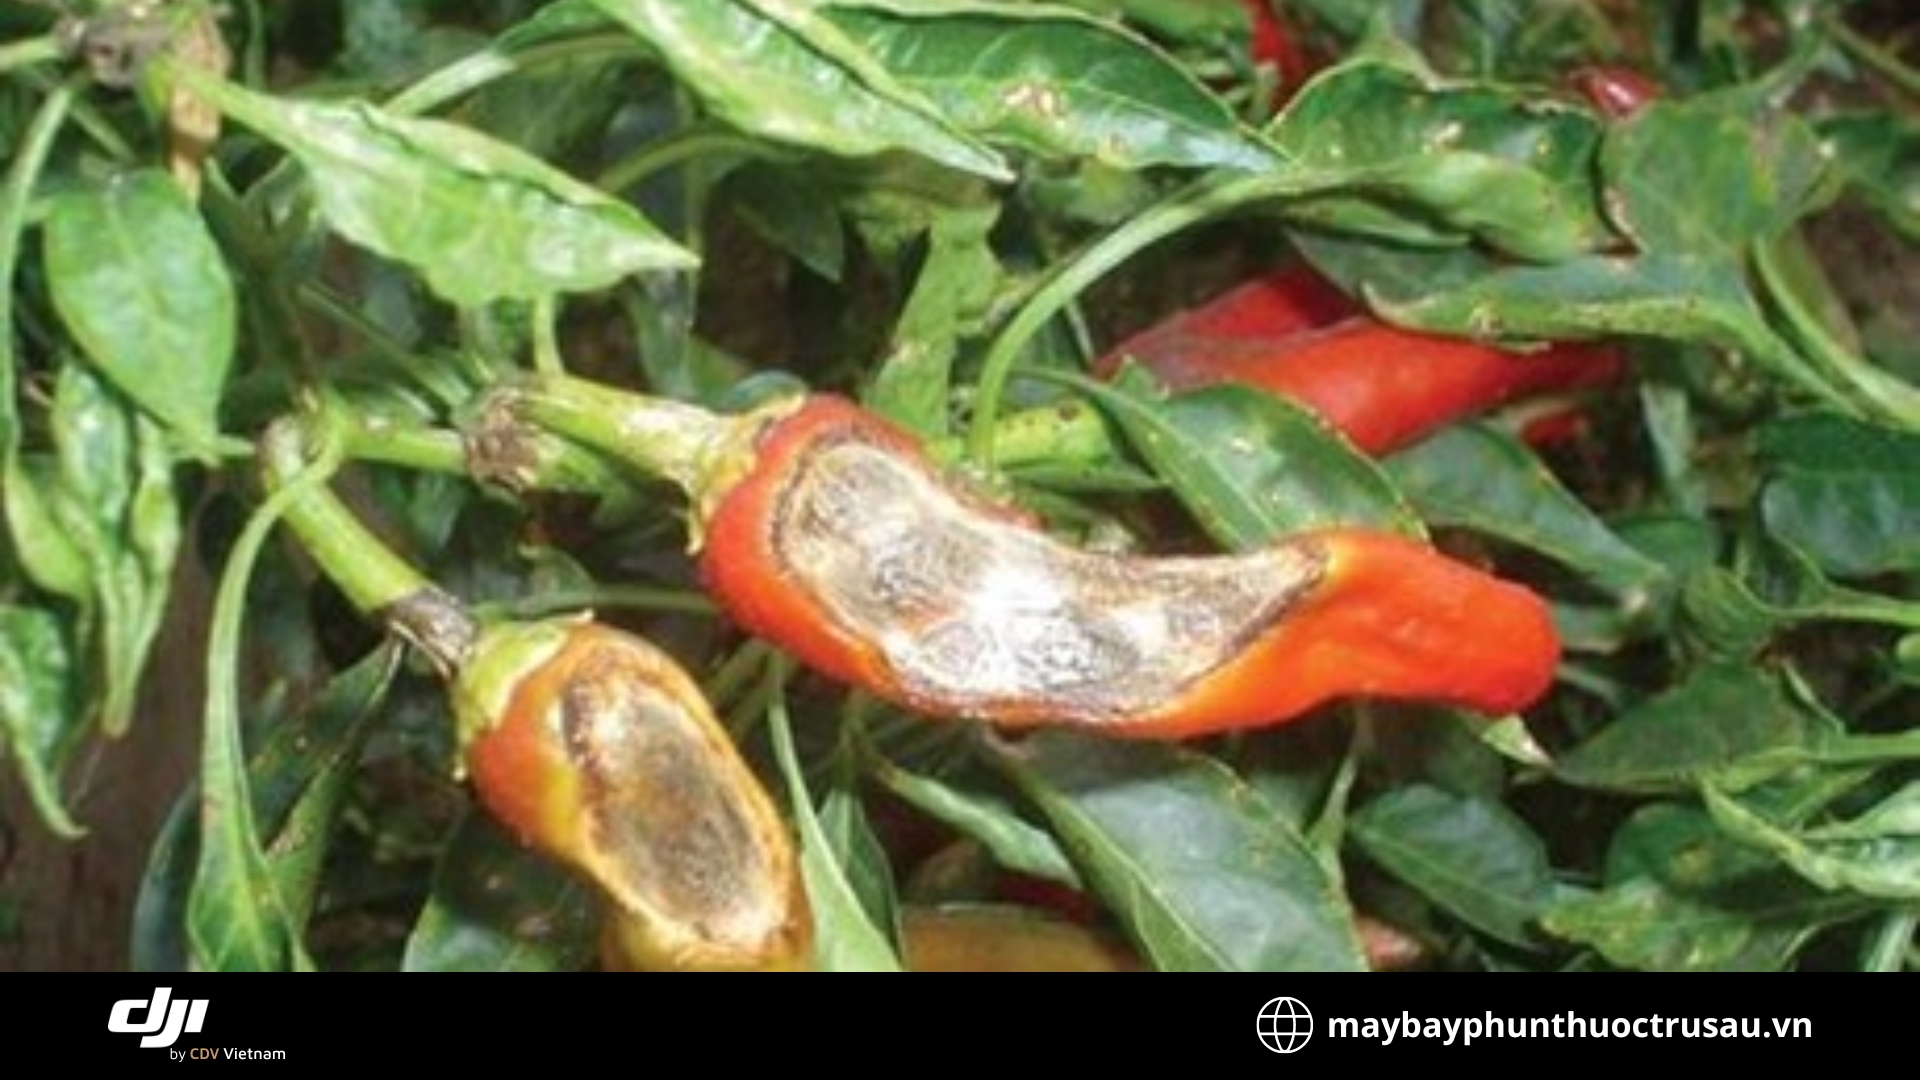 Bệnh thối trái (Fruit rot)